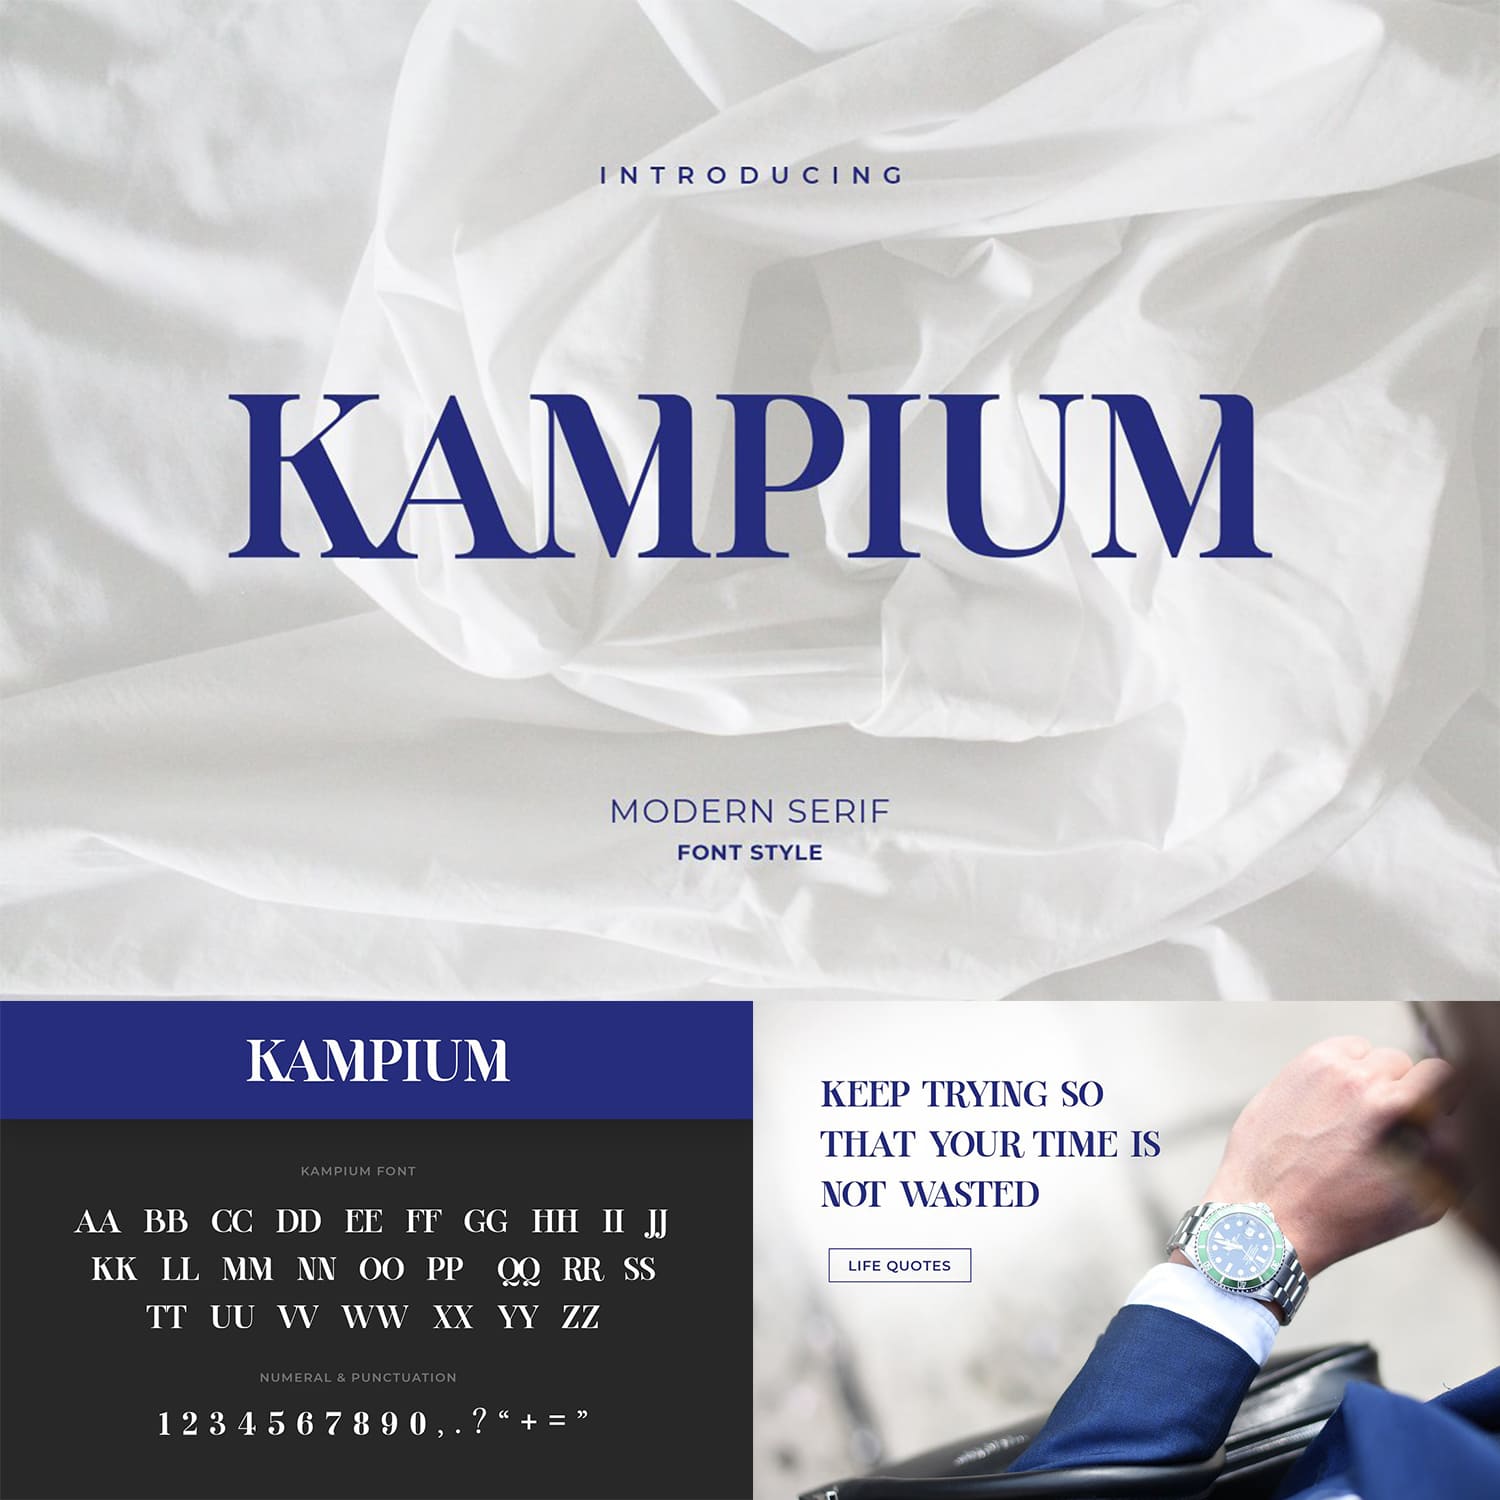 Kampium Serif Font main cover.